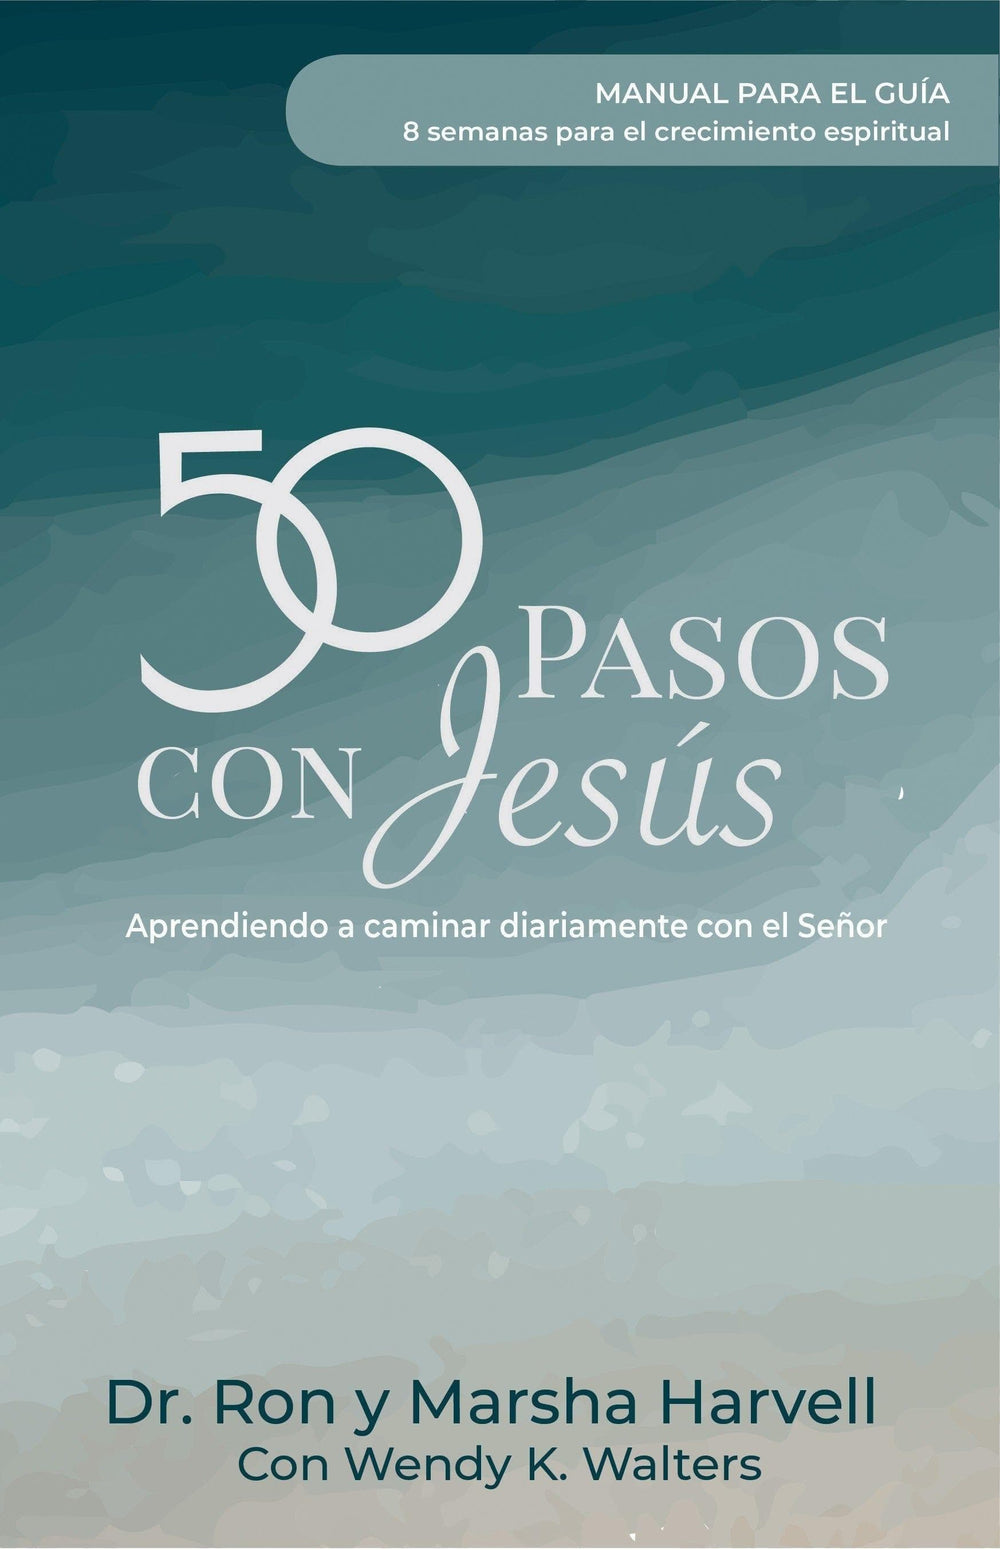 50 pasos con Jesús. Manual para el guía - Dr. Ron y Marsha Harvell con Wendy K. Walters - Pura Vida Books